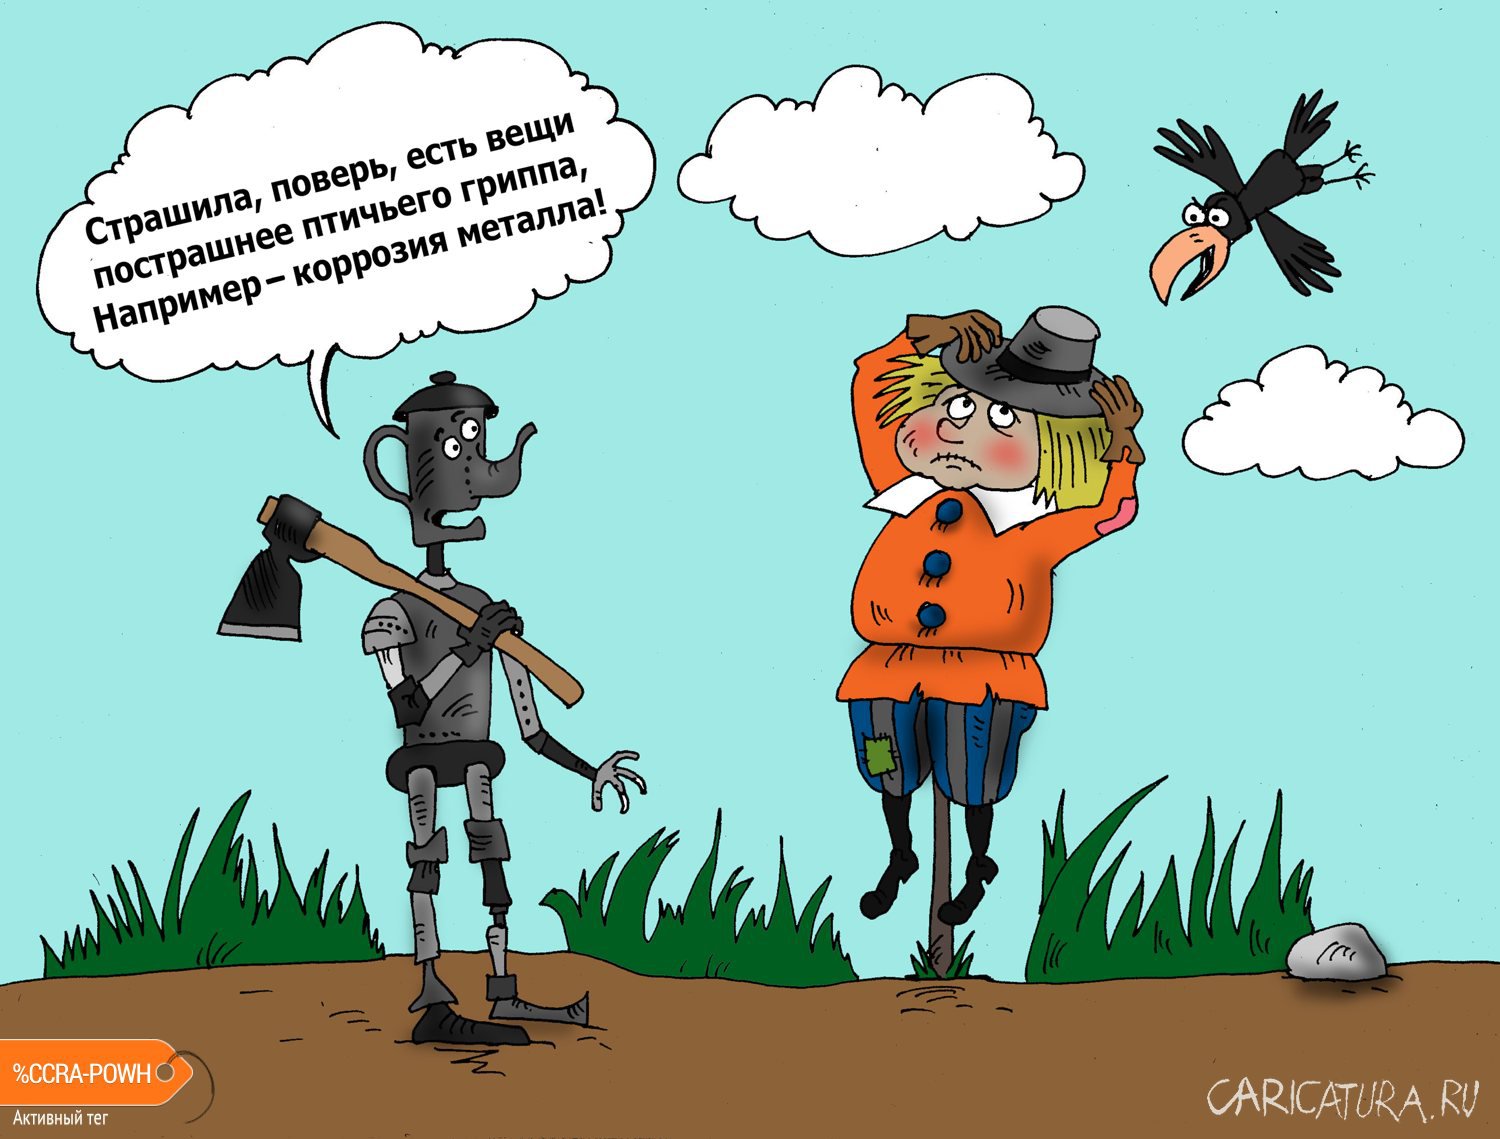 Карикатура "Коррозия", Валерий Тарасенко